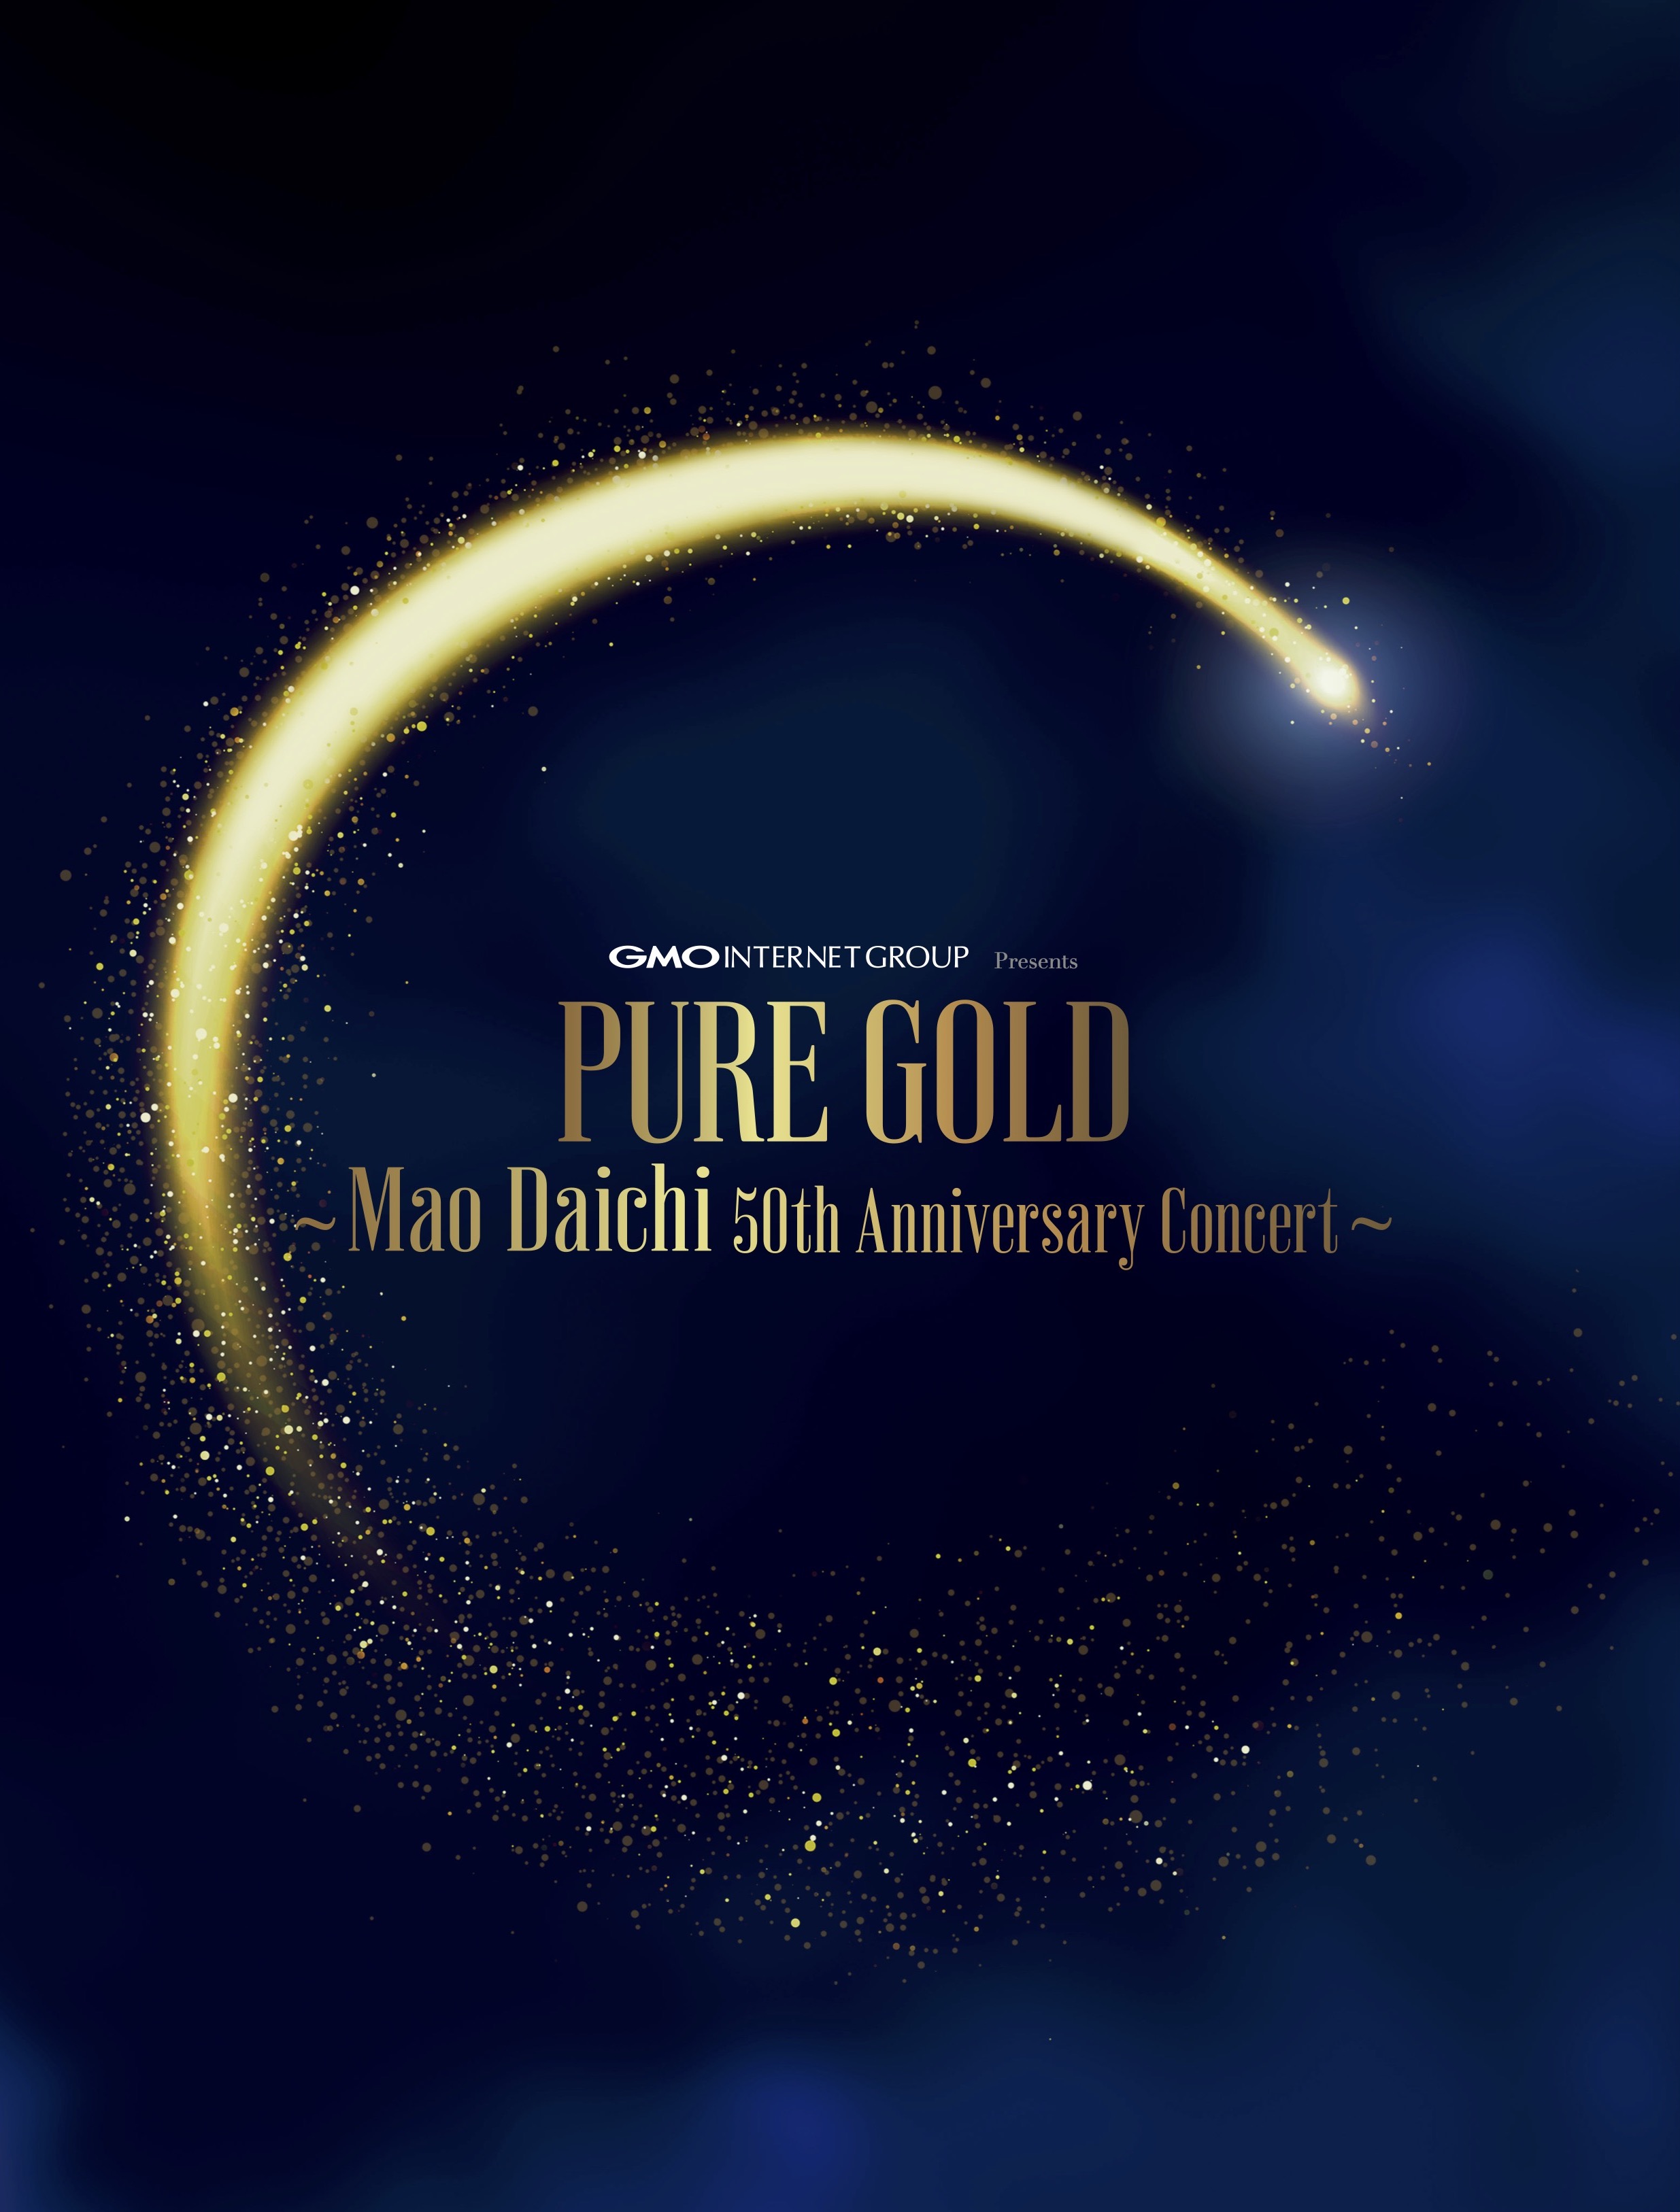 プログラム　GMOインターネットグループ　presents「PURE GOLD 〜大地真央50周年記念コンサート〜」